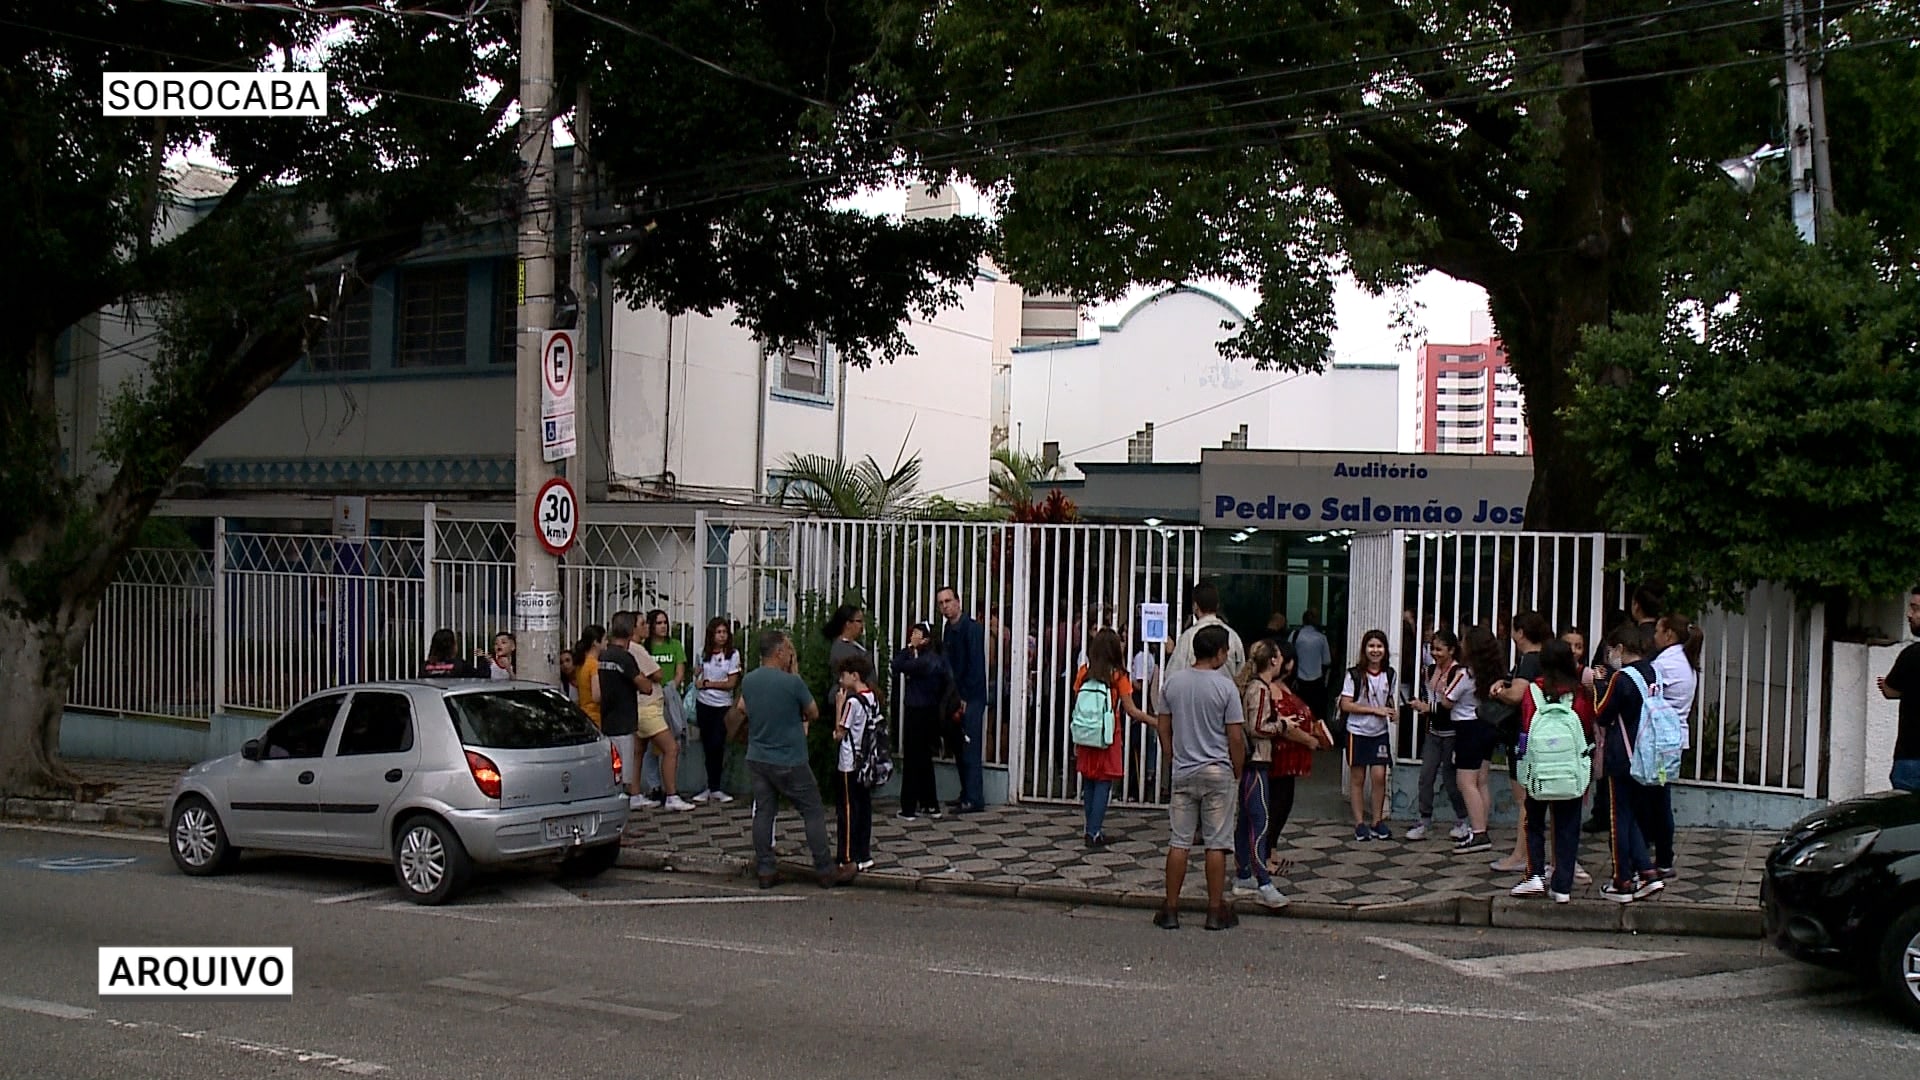 Detectores de metal vão ser implantados em escolas municipais de Sorocaba